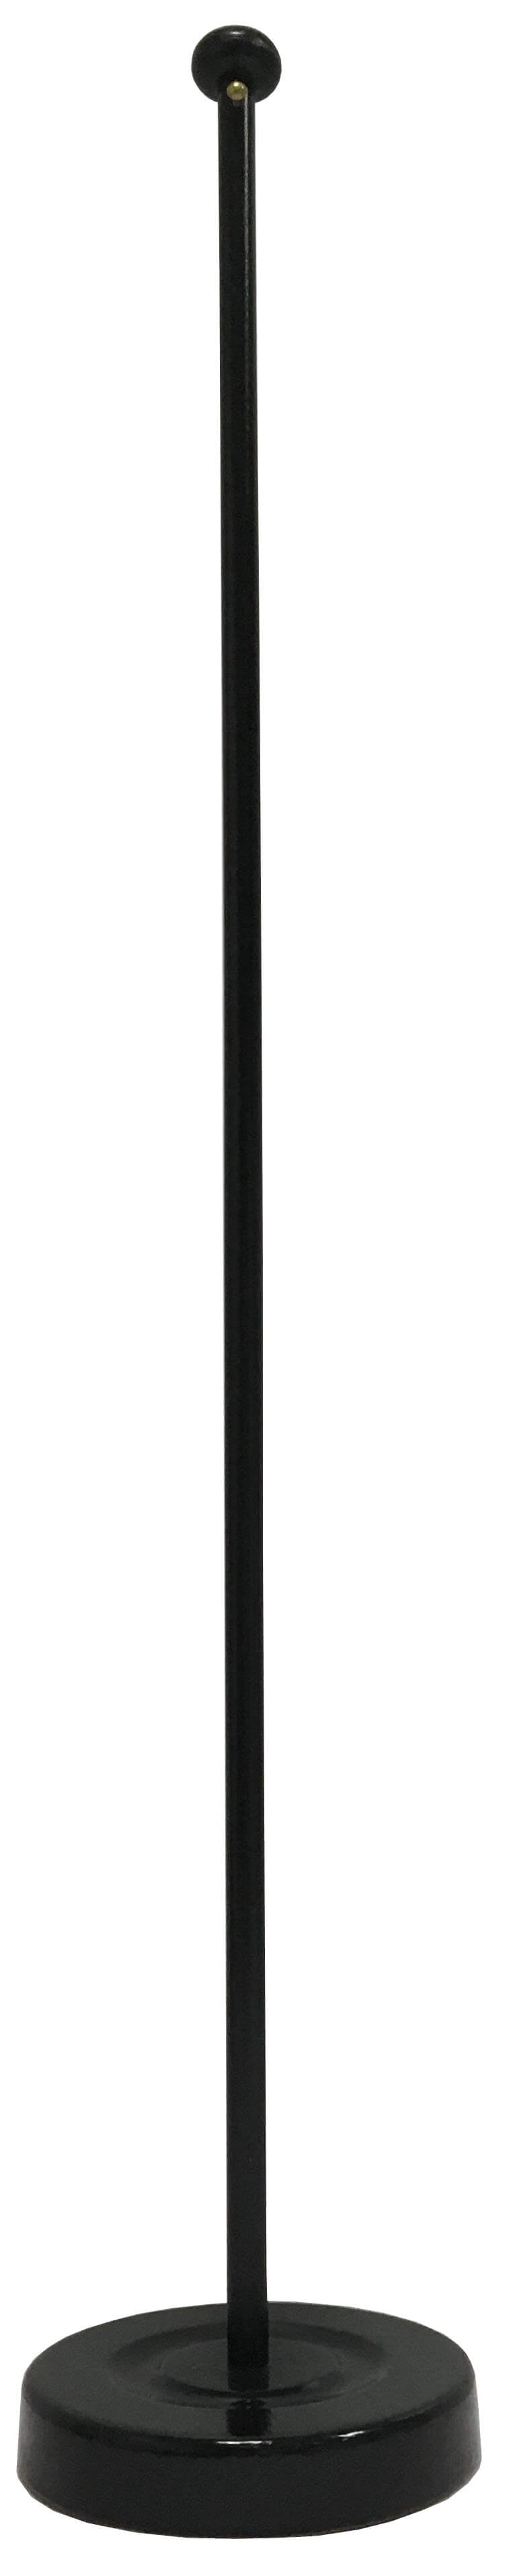 Wimpel Ständer Holz in der Farbe schwarz